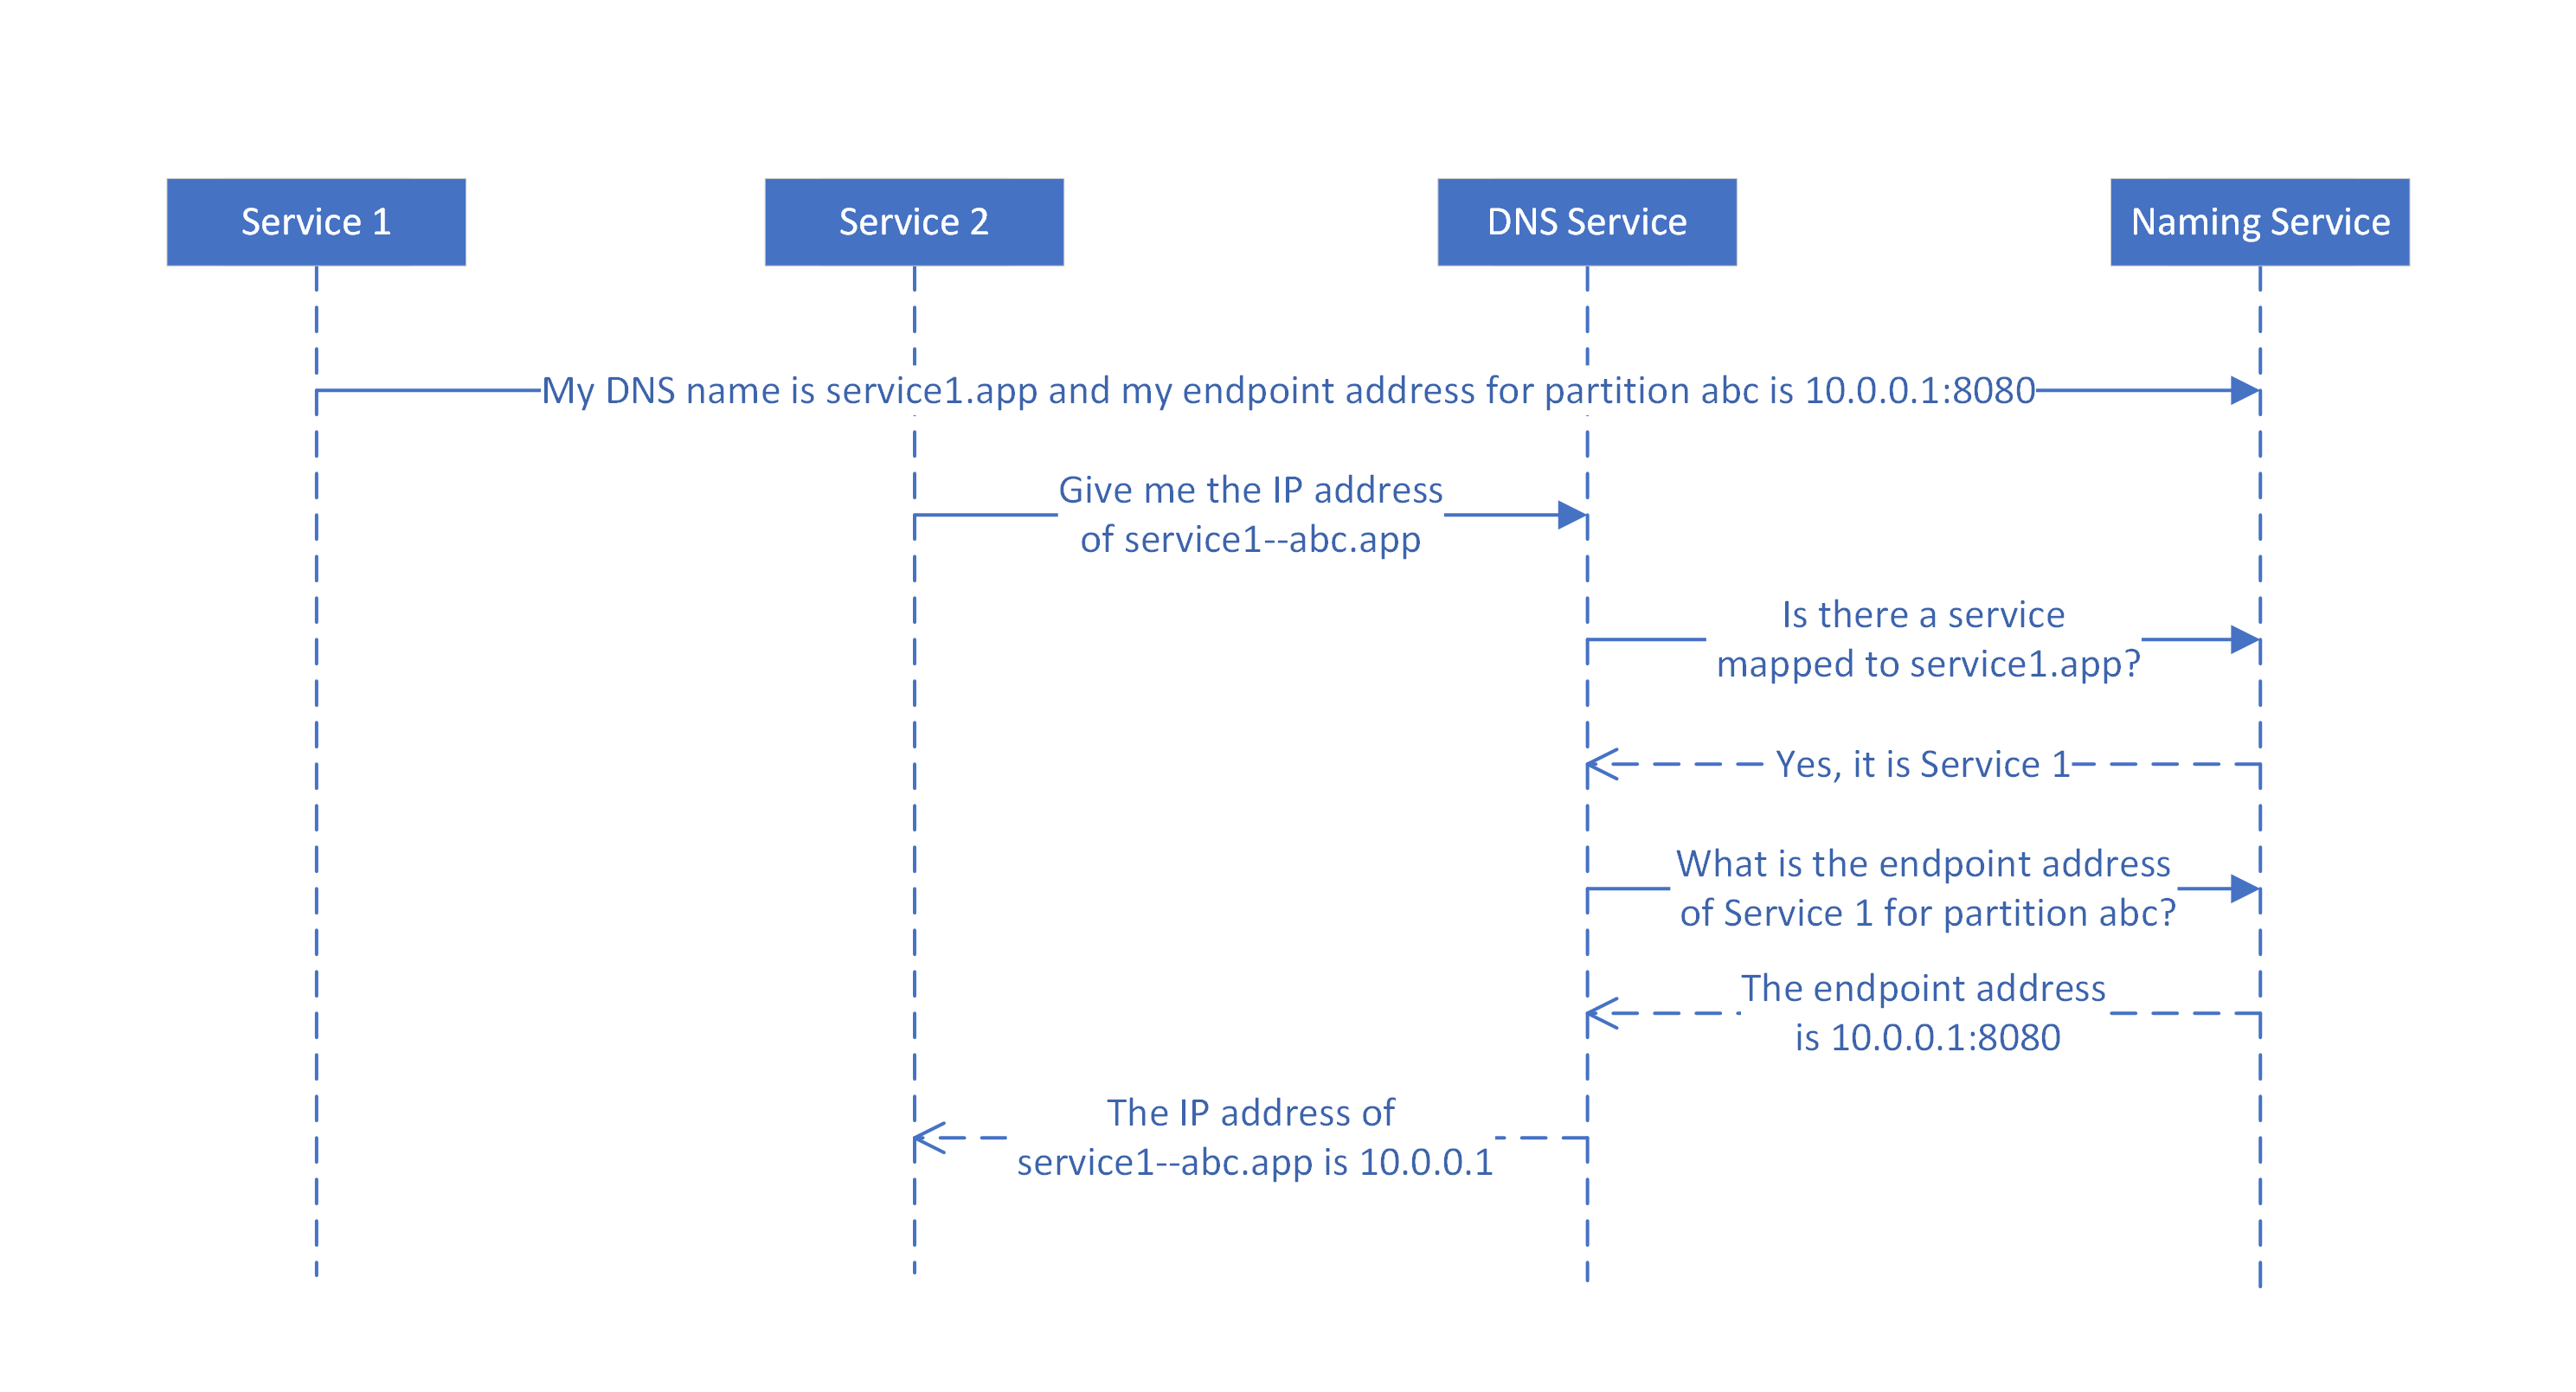 Diagramma che mostra il mapping dei nomi DNS ai nomi dei servizi in base al servizio DNS per i servizi con stato partizionato.